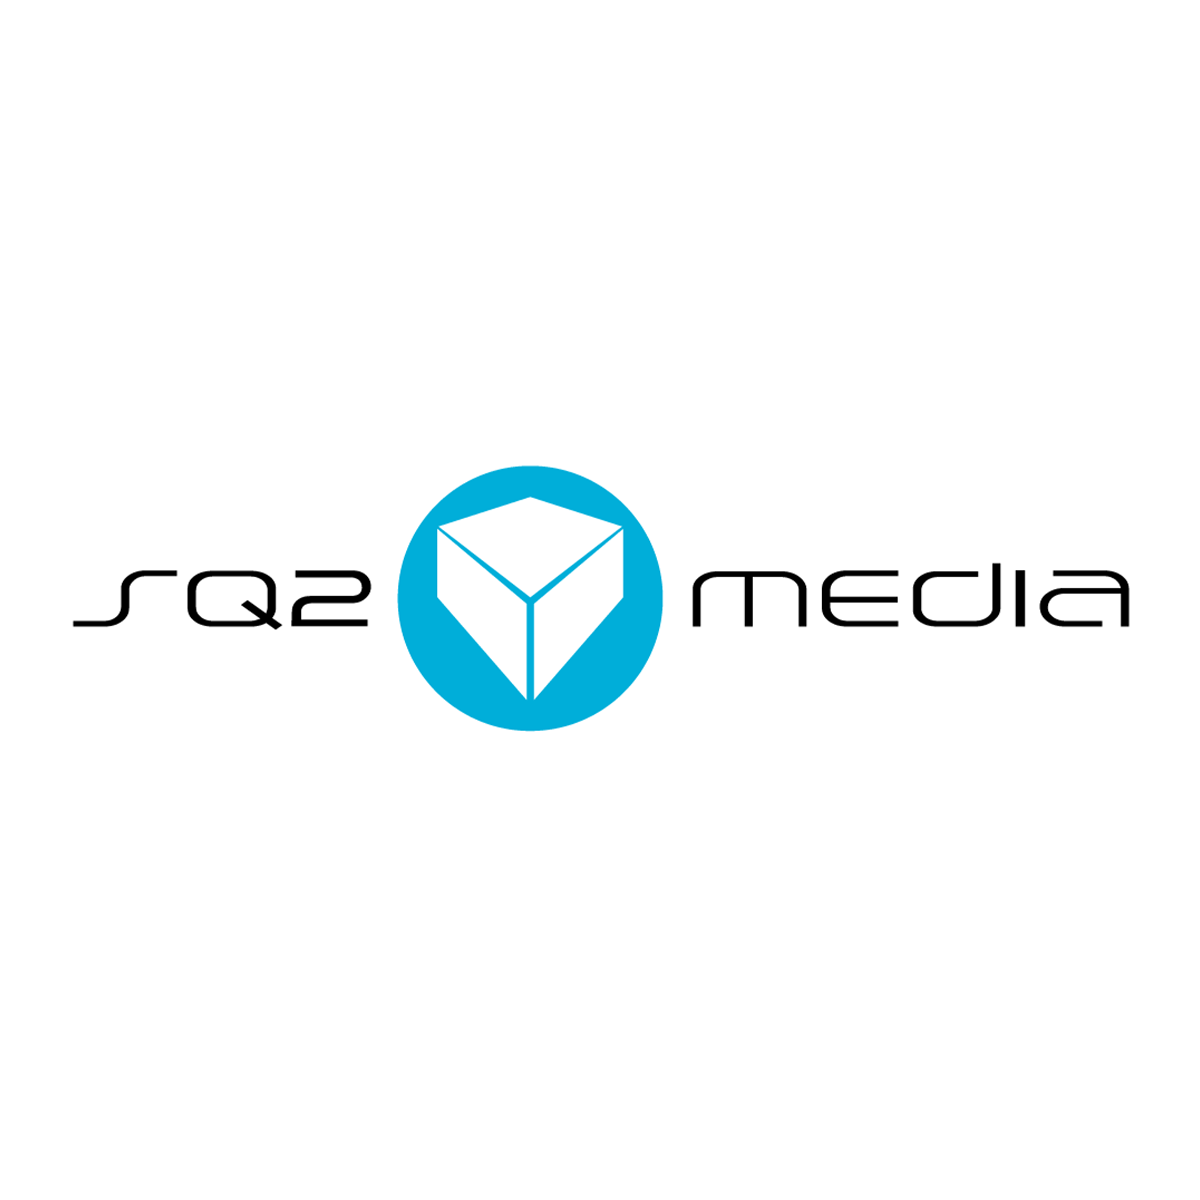 SQ2 Media Logo